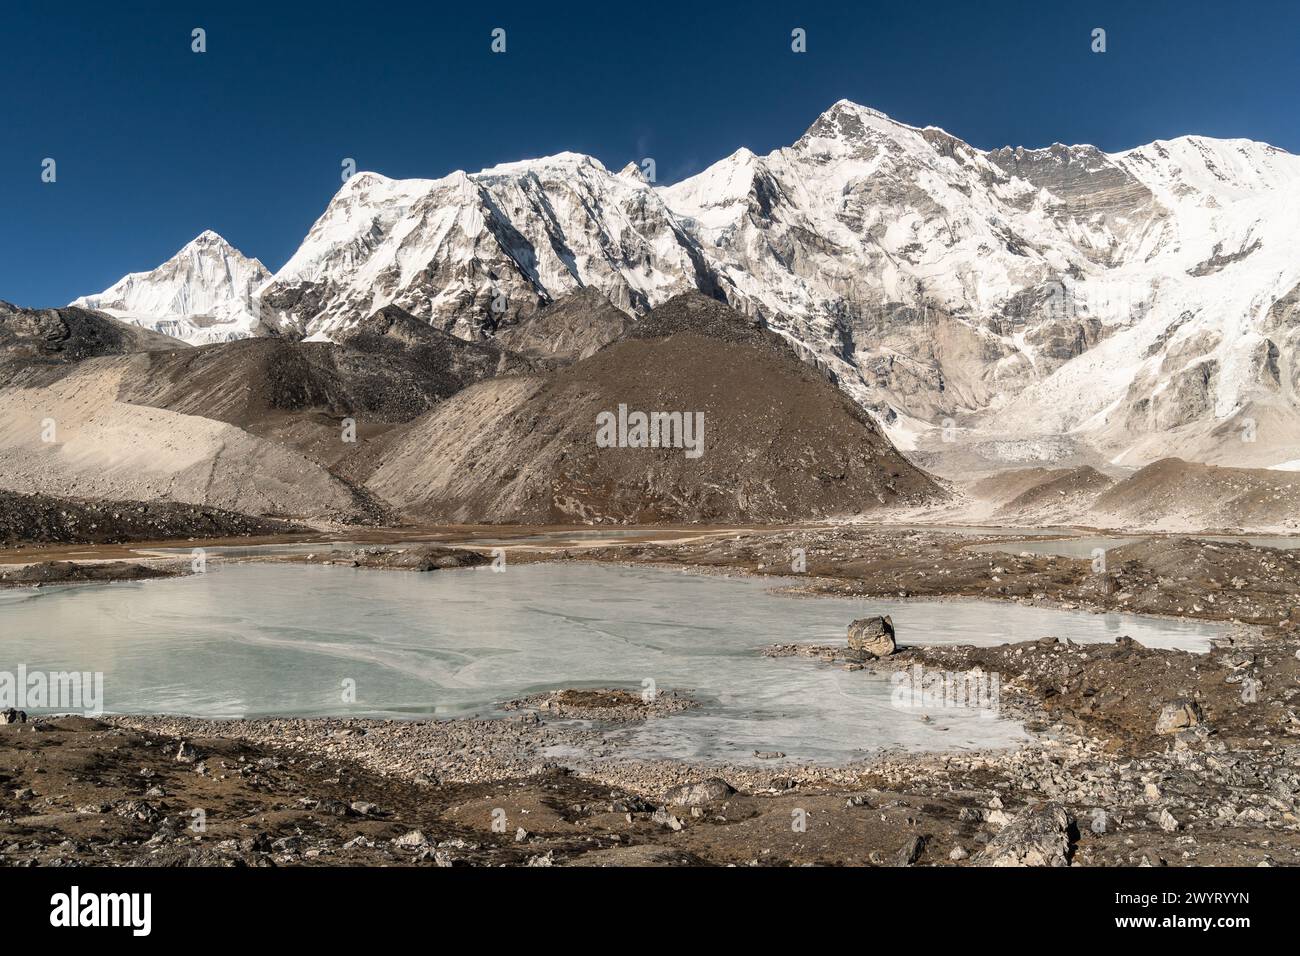 Gokyo, Nepal: Dramatischer Blick auf den Gokyo 6. See am Fuße des Cho Oyu Gipfels in der Region Khumbu im Himalaya in Nepal Stockfoto